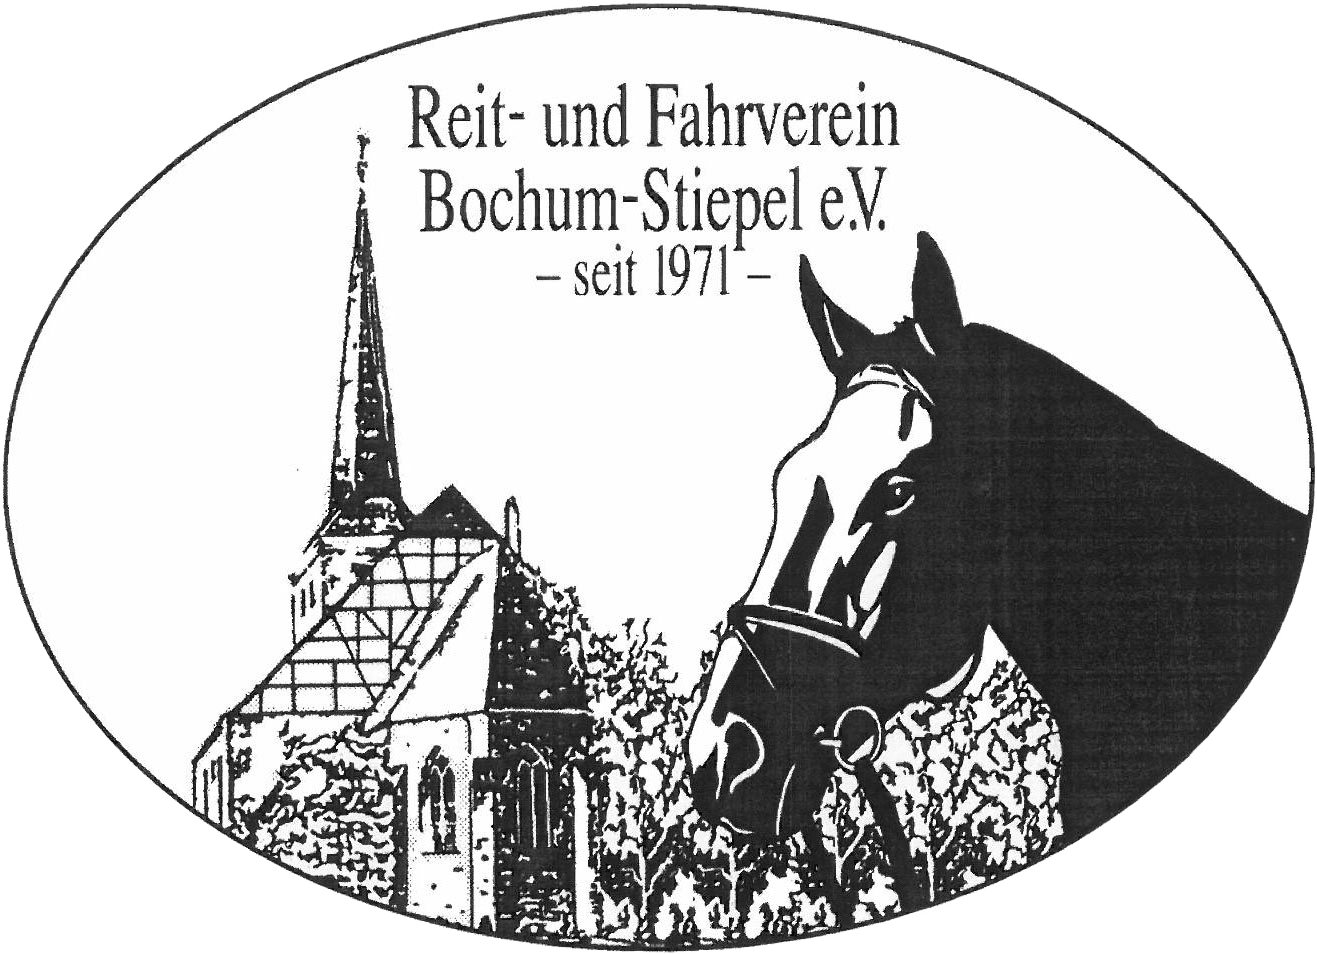 Reit- und Fahrverein Bochum-Stiepel